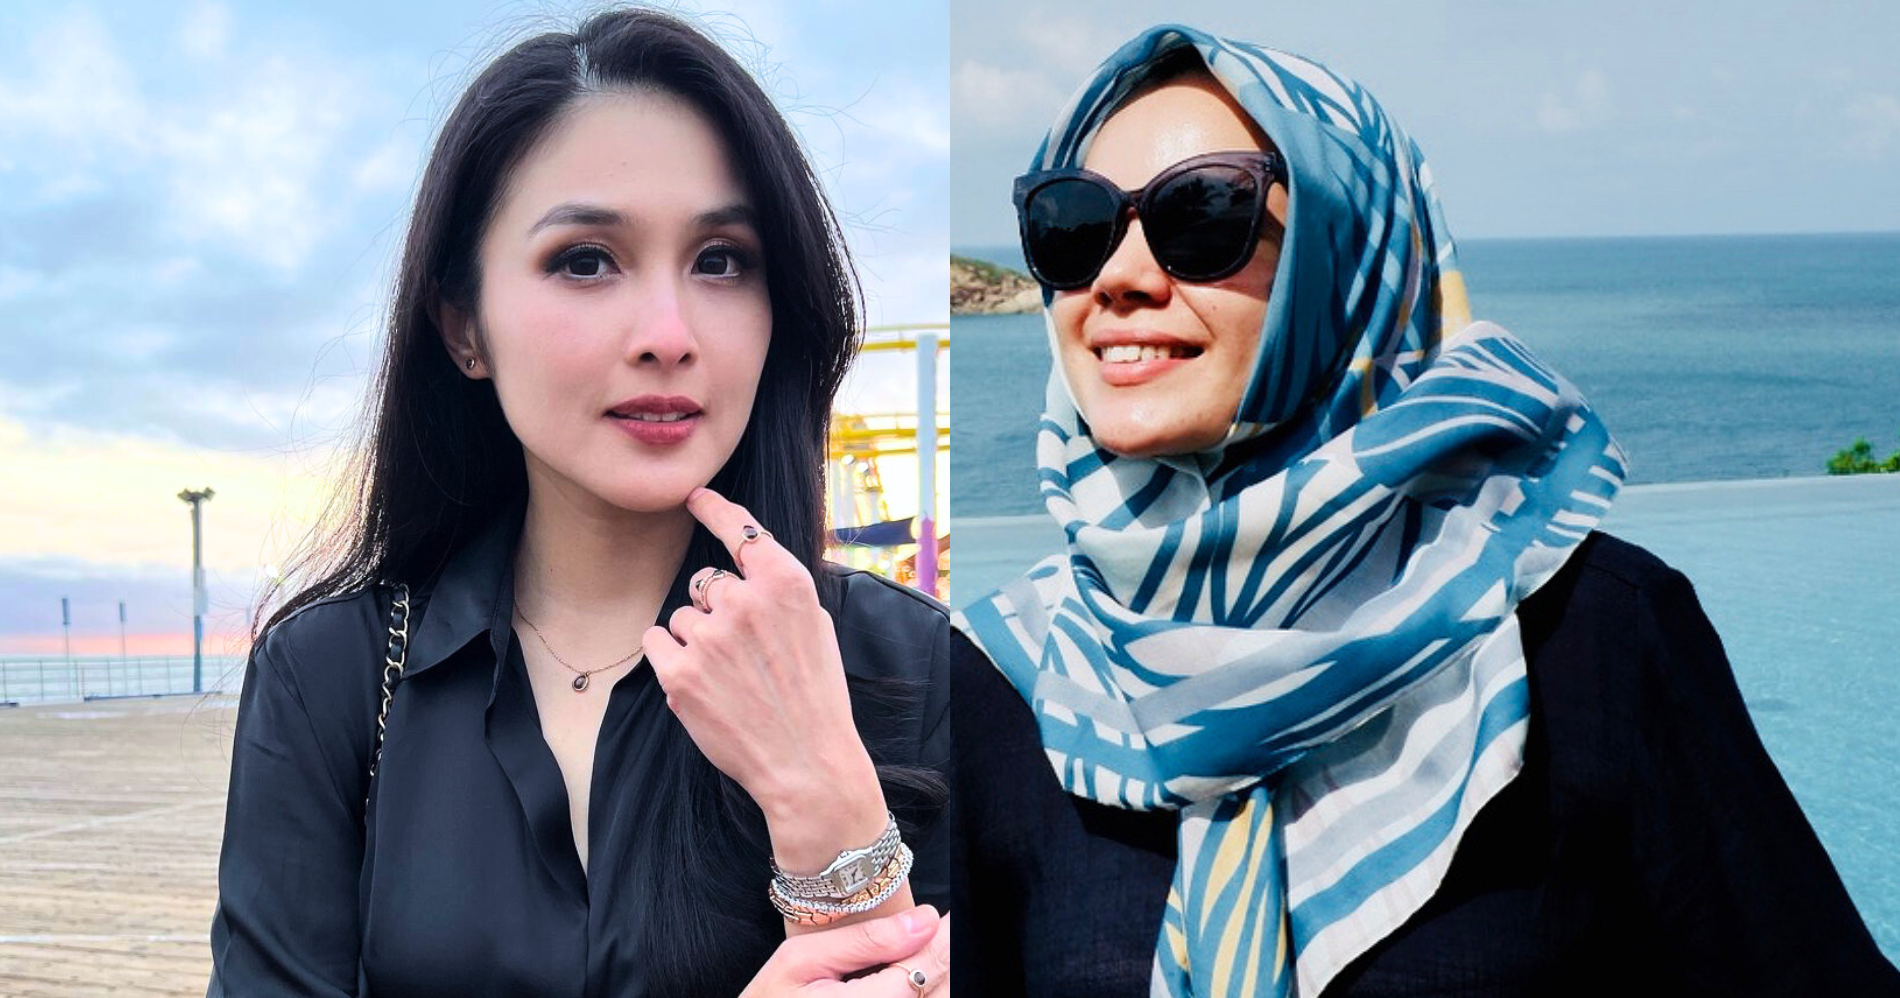 Netizen Salah Lapak Serang Akun Dewi Sandra Bukan Sandra Dewi Paska Berita Kasus Korupsinya - Image: Instagram @sandradewi88 dan @dewisandra